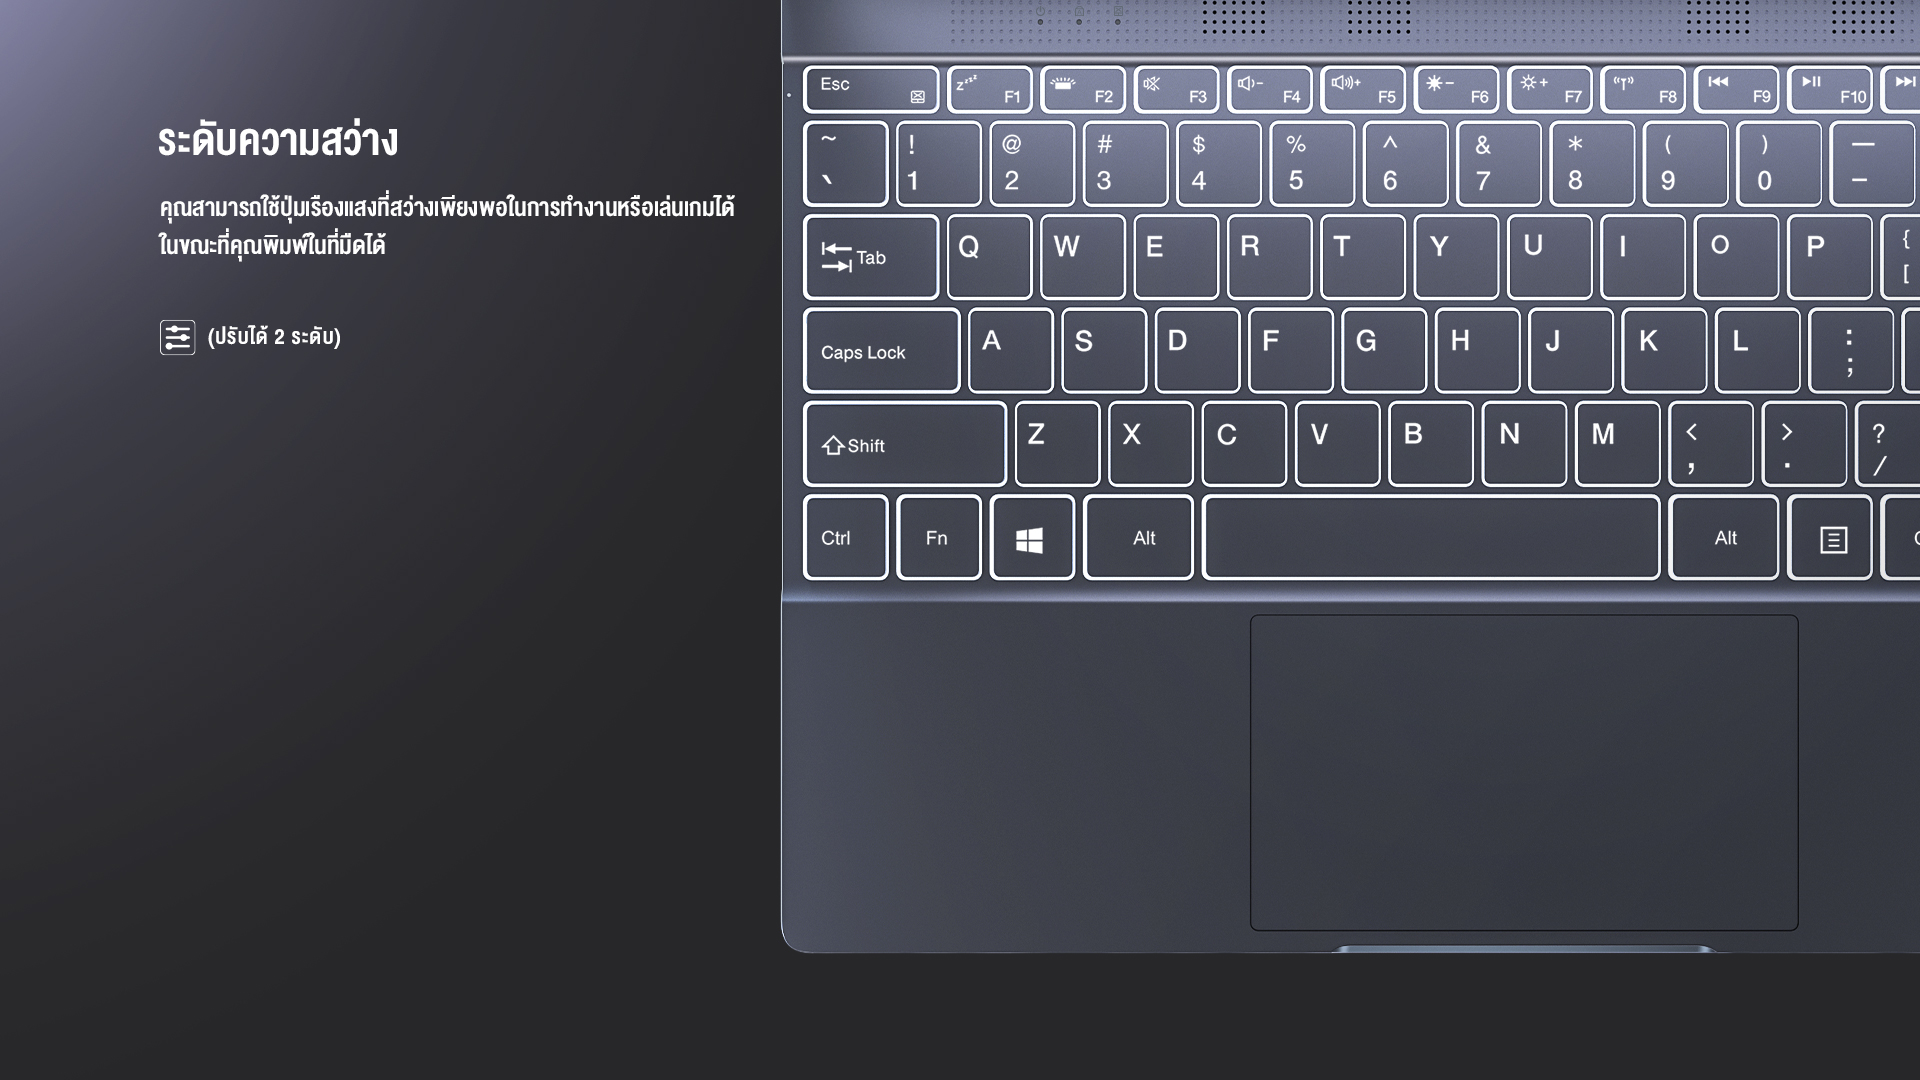 คำอธิบายเพิ่มเติมเกี่ยวกับ BMAX MaxBook Y13 2-in-1 laptop หมุน 360 Yoga องศา จอ 13.3 นิ้ว Multi-touch Ultrabook Windows 10 Pro ลิขสิทธิ์แท้ Intel Celeron Quad-Core 8GB RAM 256GB SSD โน๊คบุ๊ค